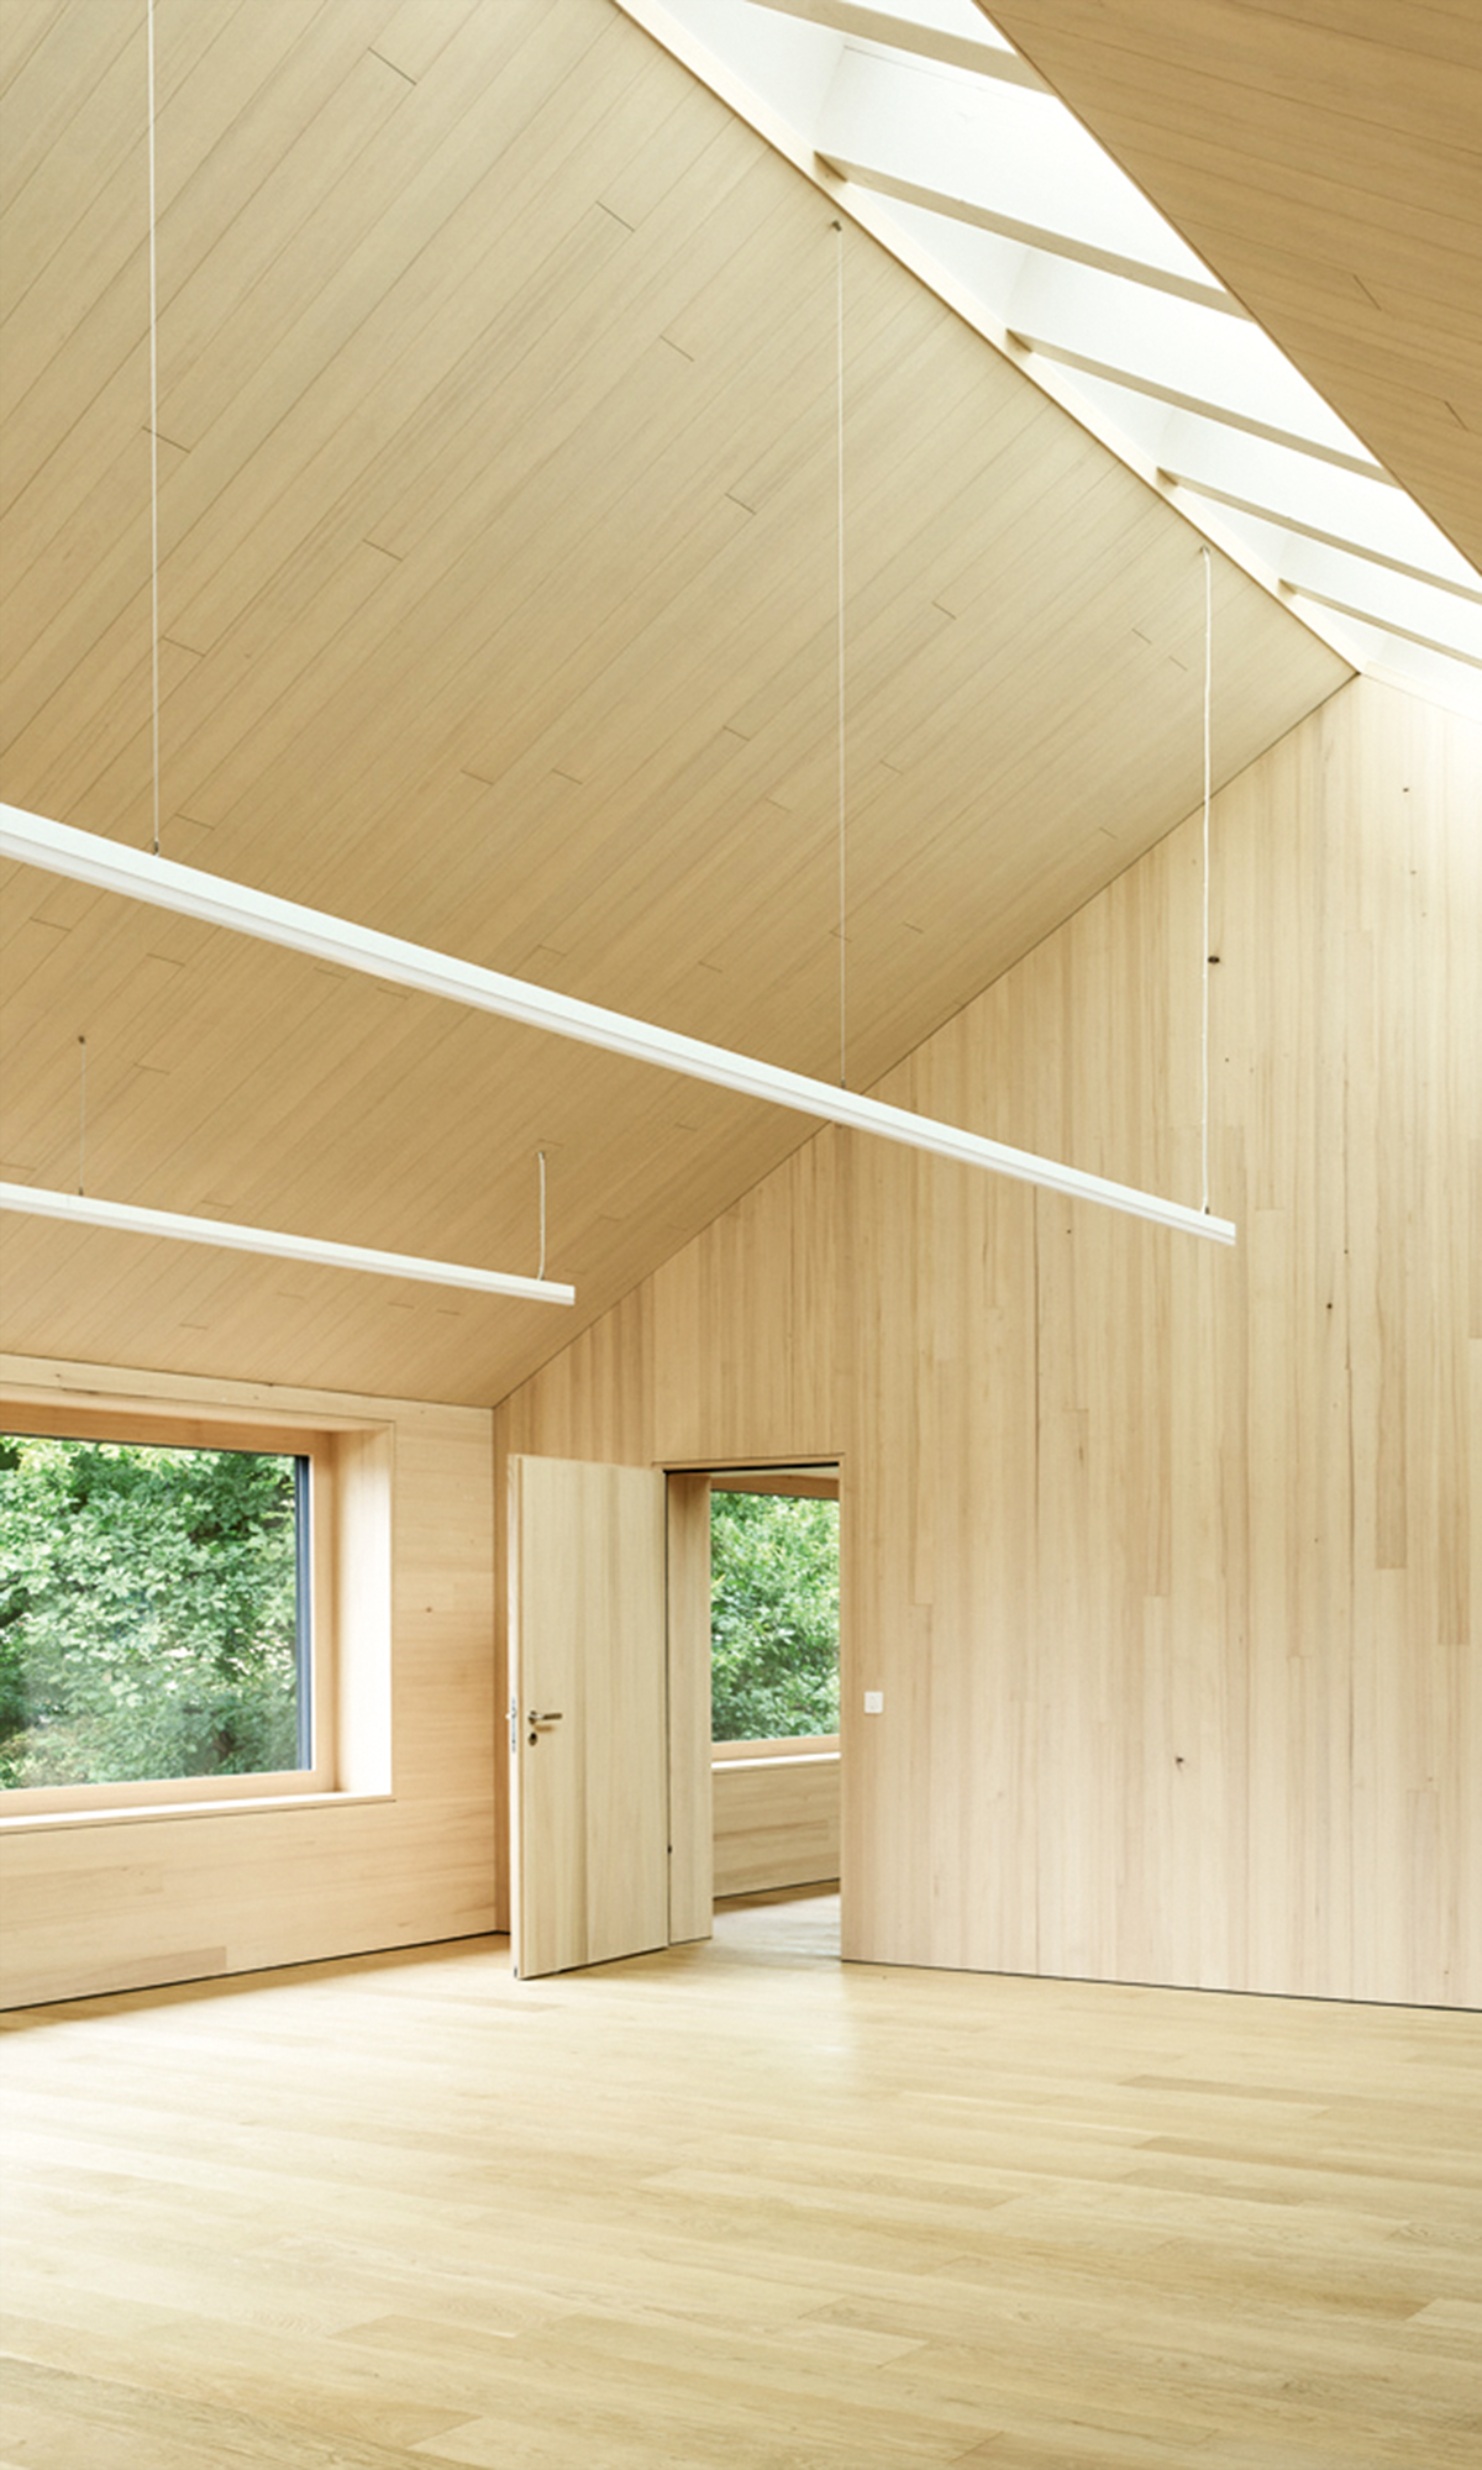 Hauts plafonds avec aménagement intérieur en bois et lumière naturelle au plafond